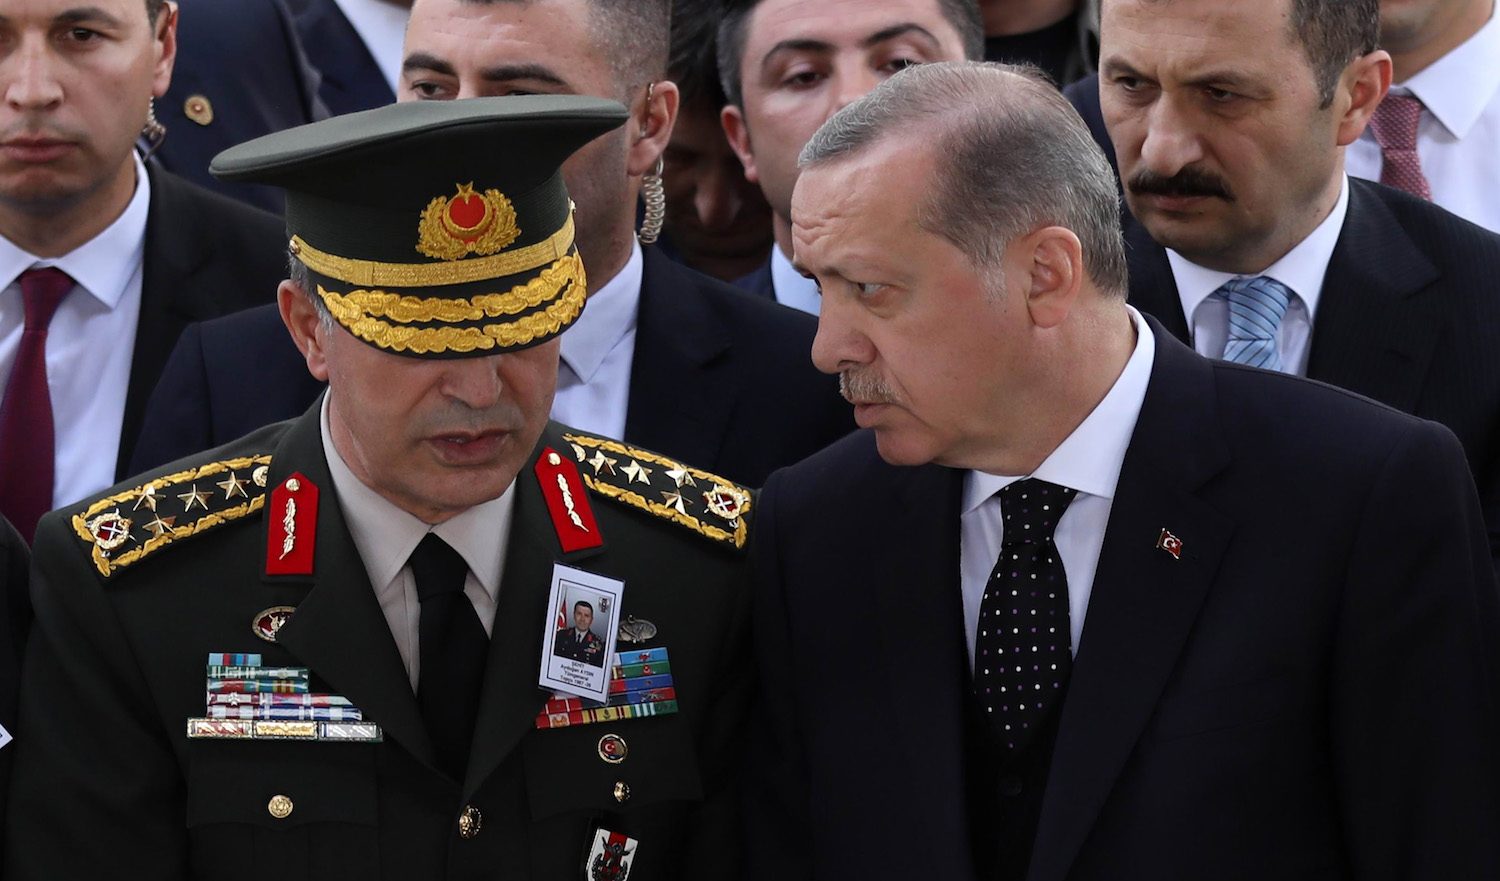 Imprigiona gli oppositori, silenzia la stampa, usa i miliardi europei:  Erdogan prova a vincere le presidenziali